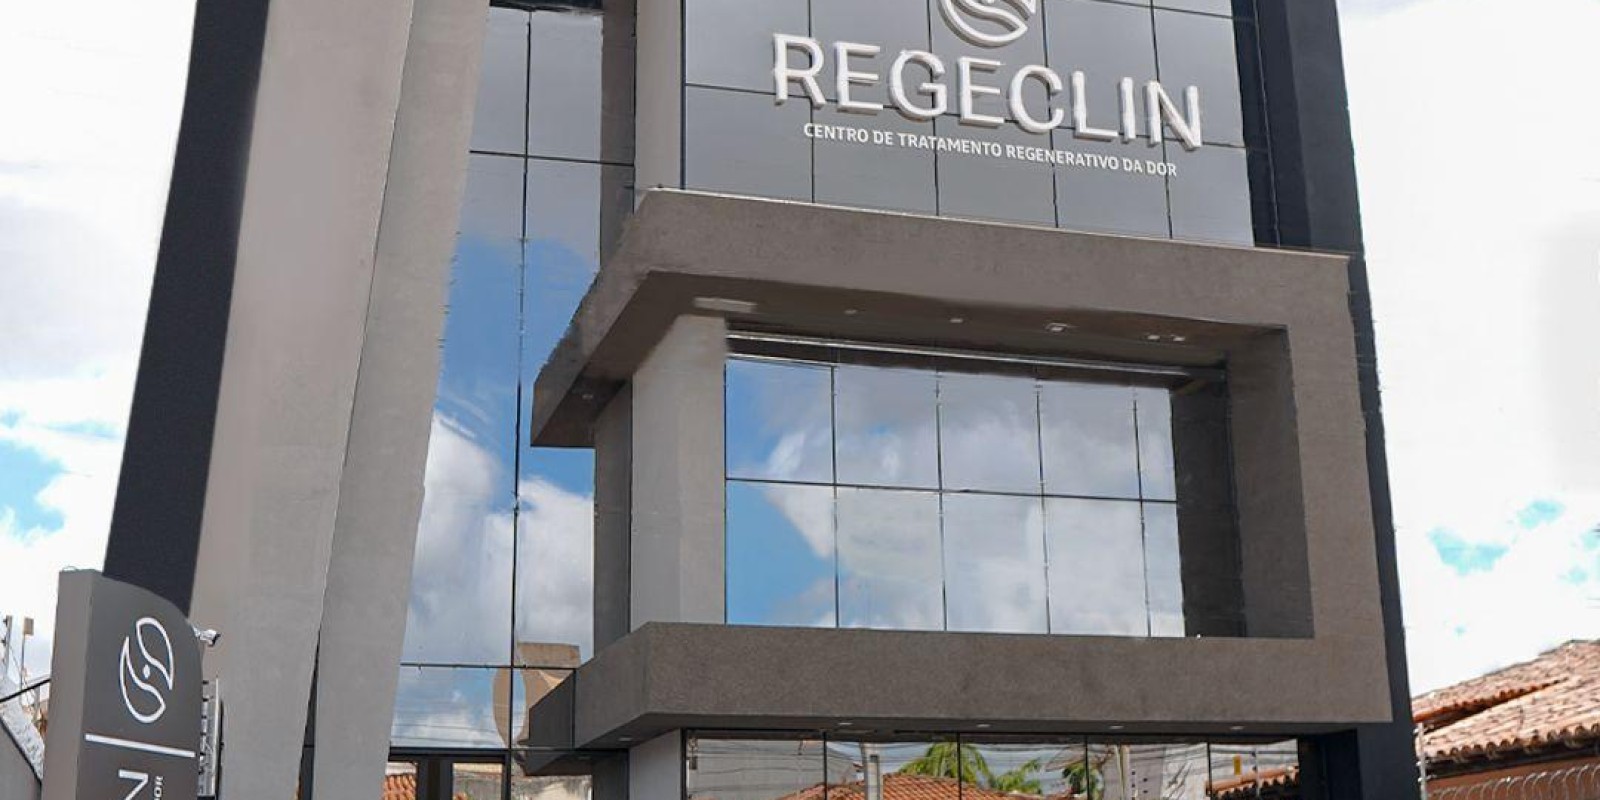 REGECLIN - Centro de Tratamento Regenerativo da Dor - Foto 17 de 17